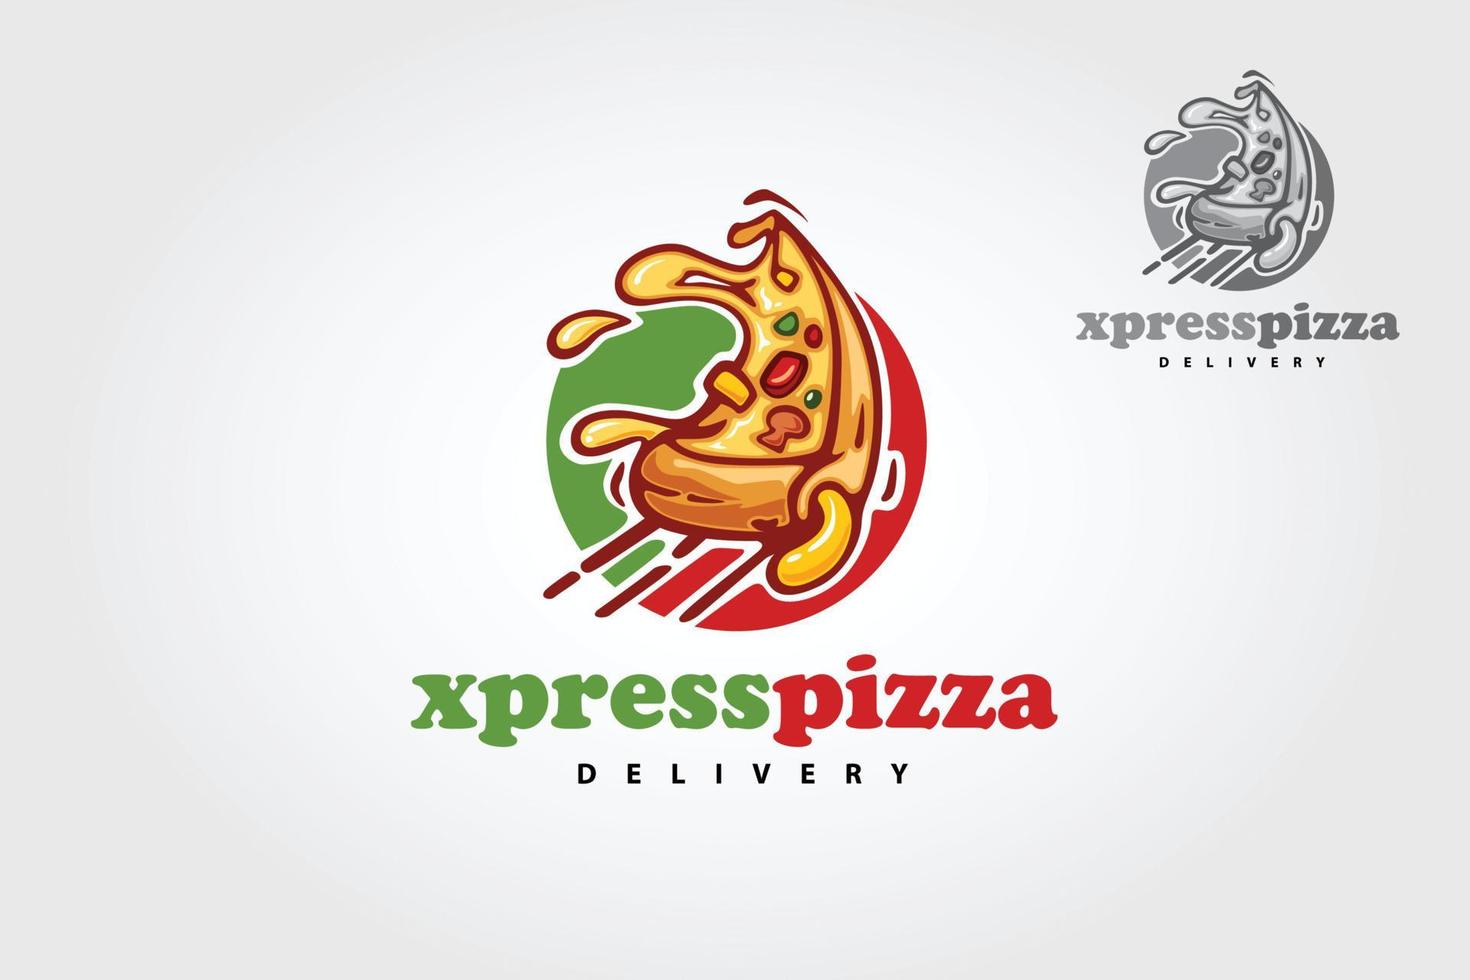 xpress pizzabezorging vector logo cartoon. dit logo is zeer geschikt voor elk pizza-gerelateerd restaurant, fastfood, bezorging, trattoria, bistro, catering en Italiaans eten.